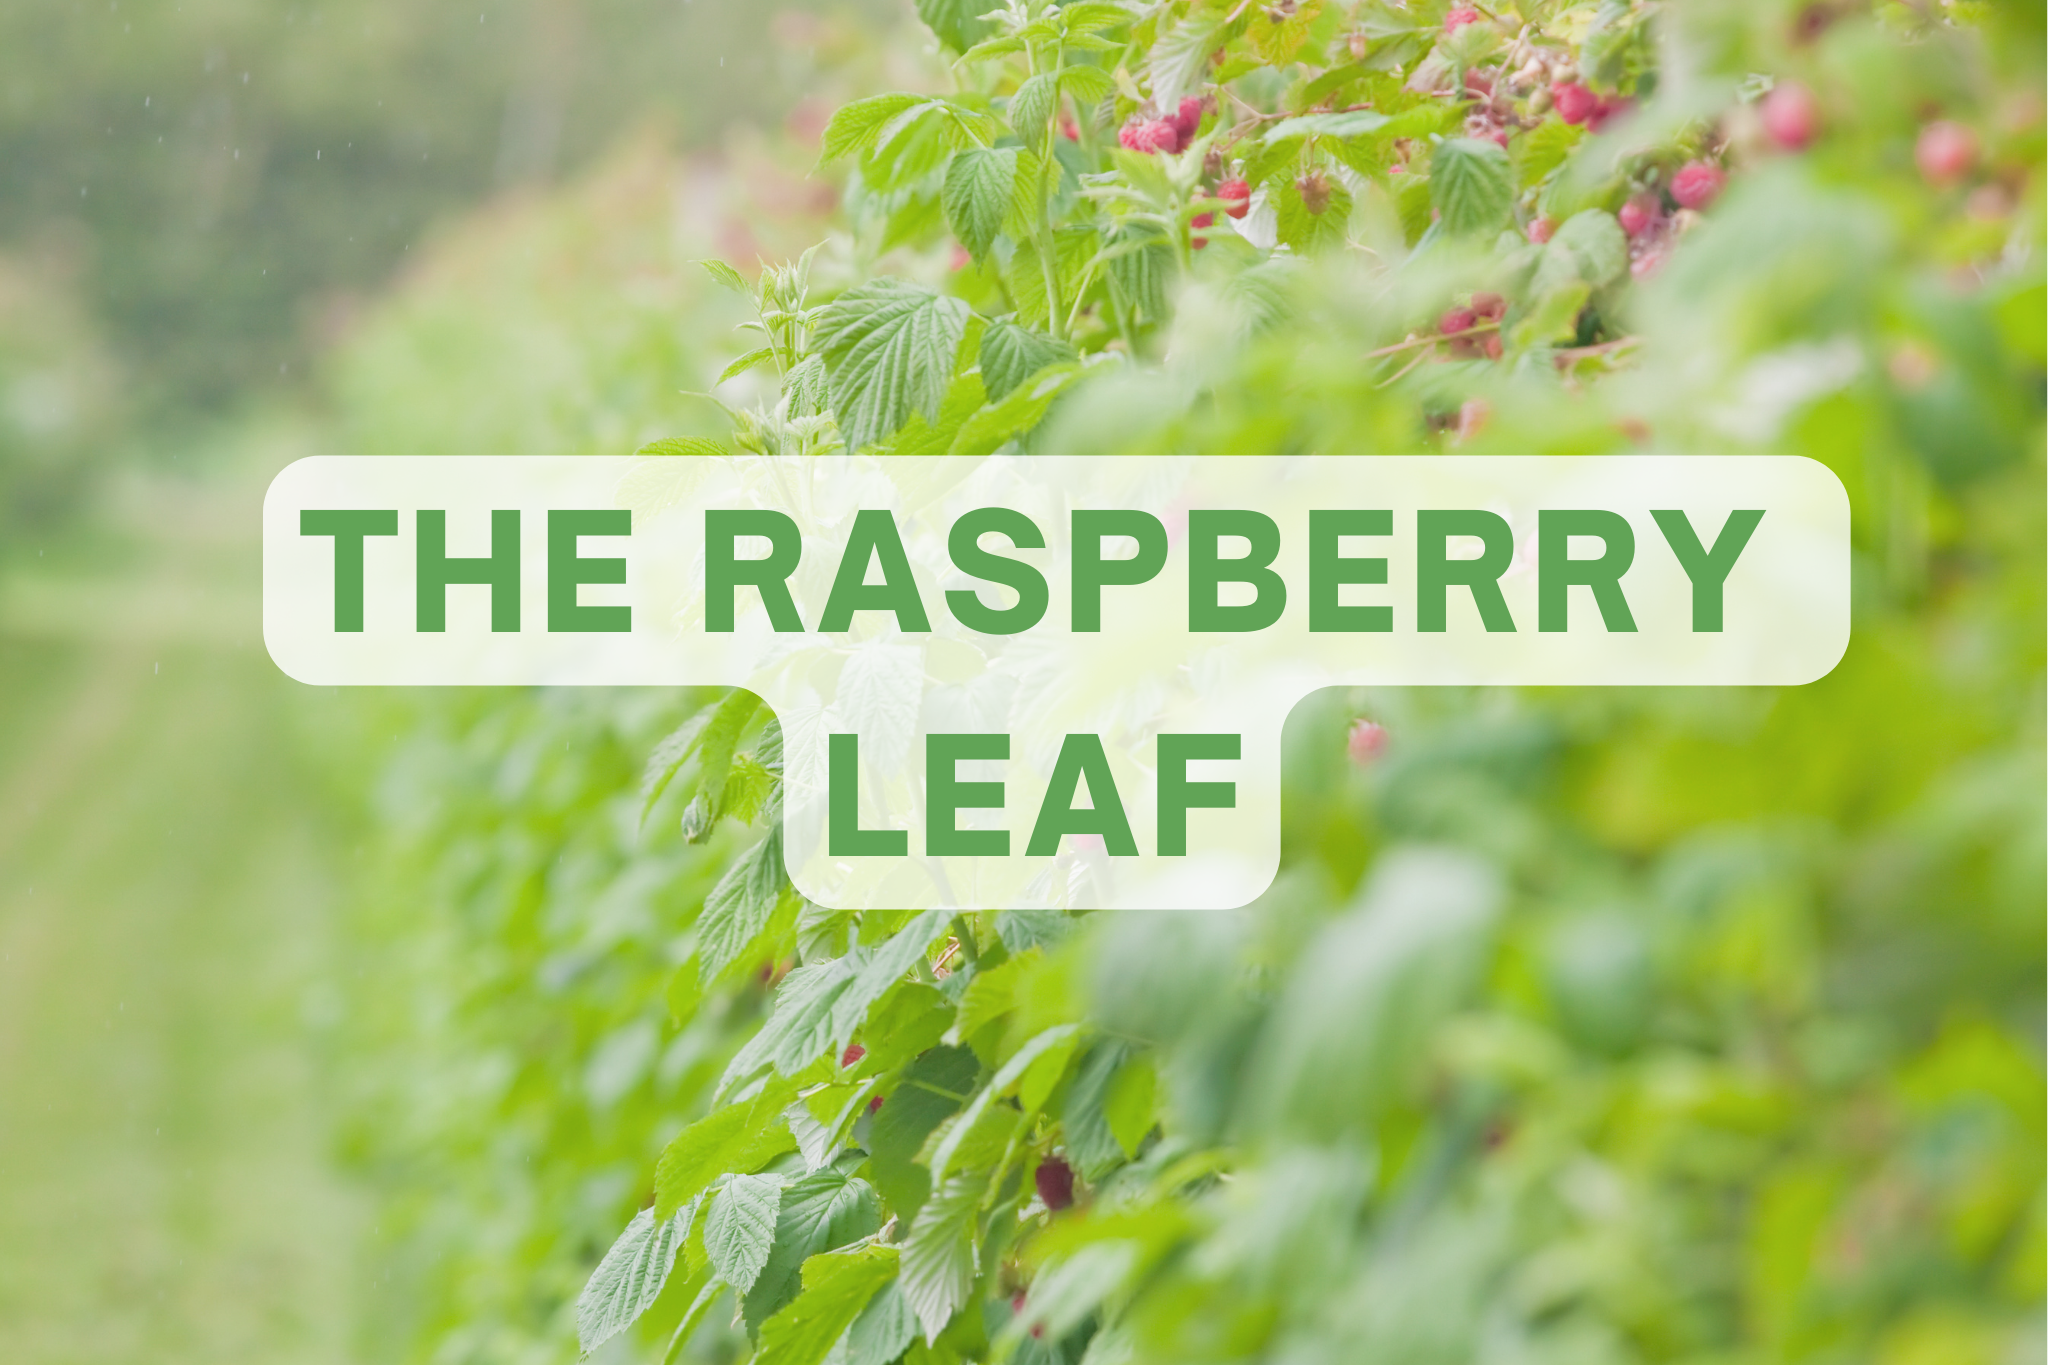 The raspberry leaf